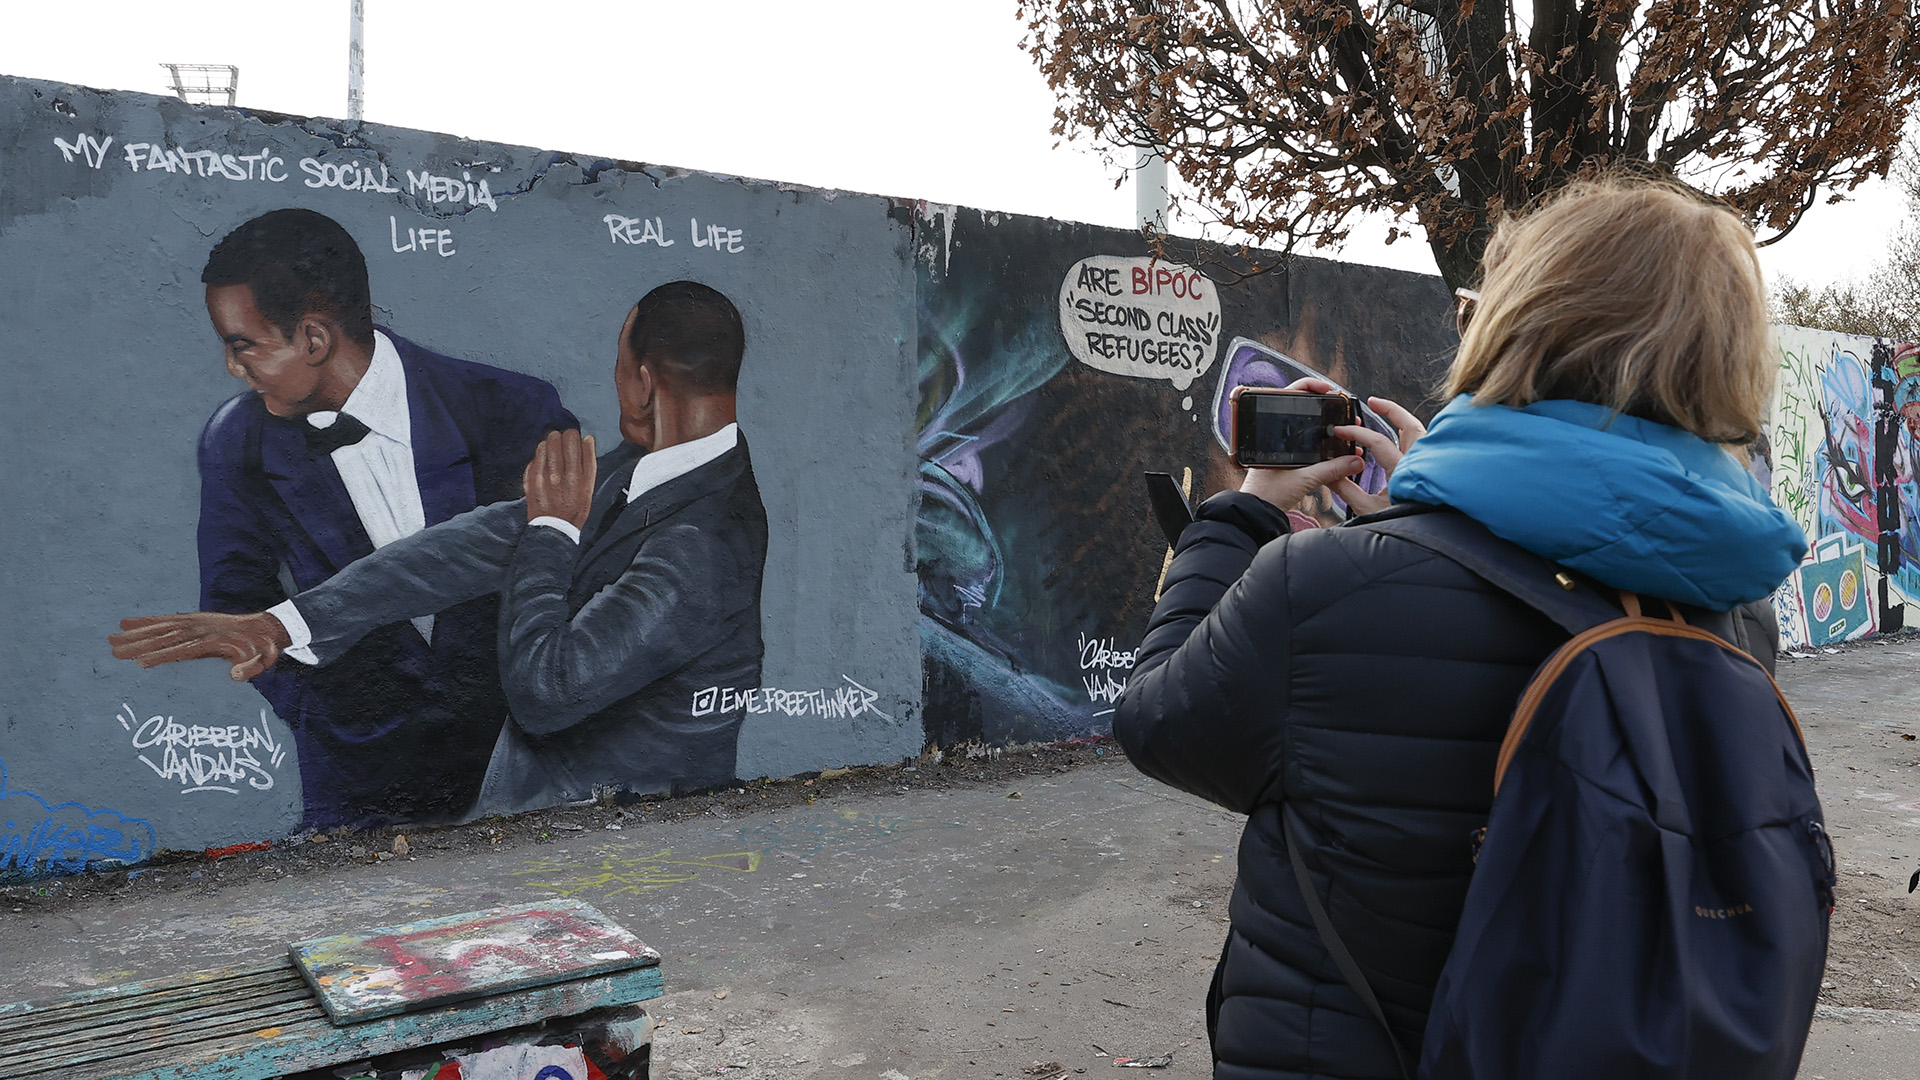 Graffiti Will Smith pofonjáról az Oscar-gálán